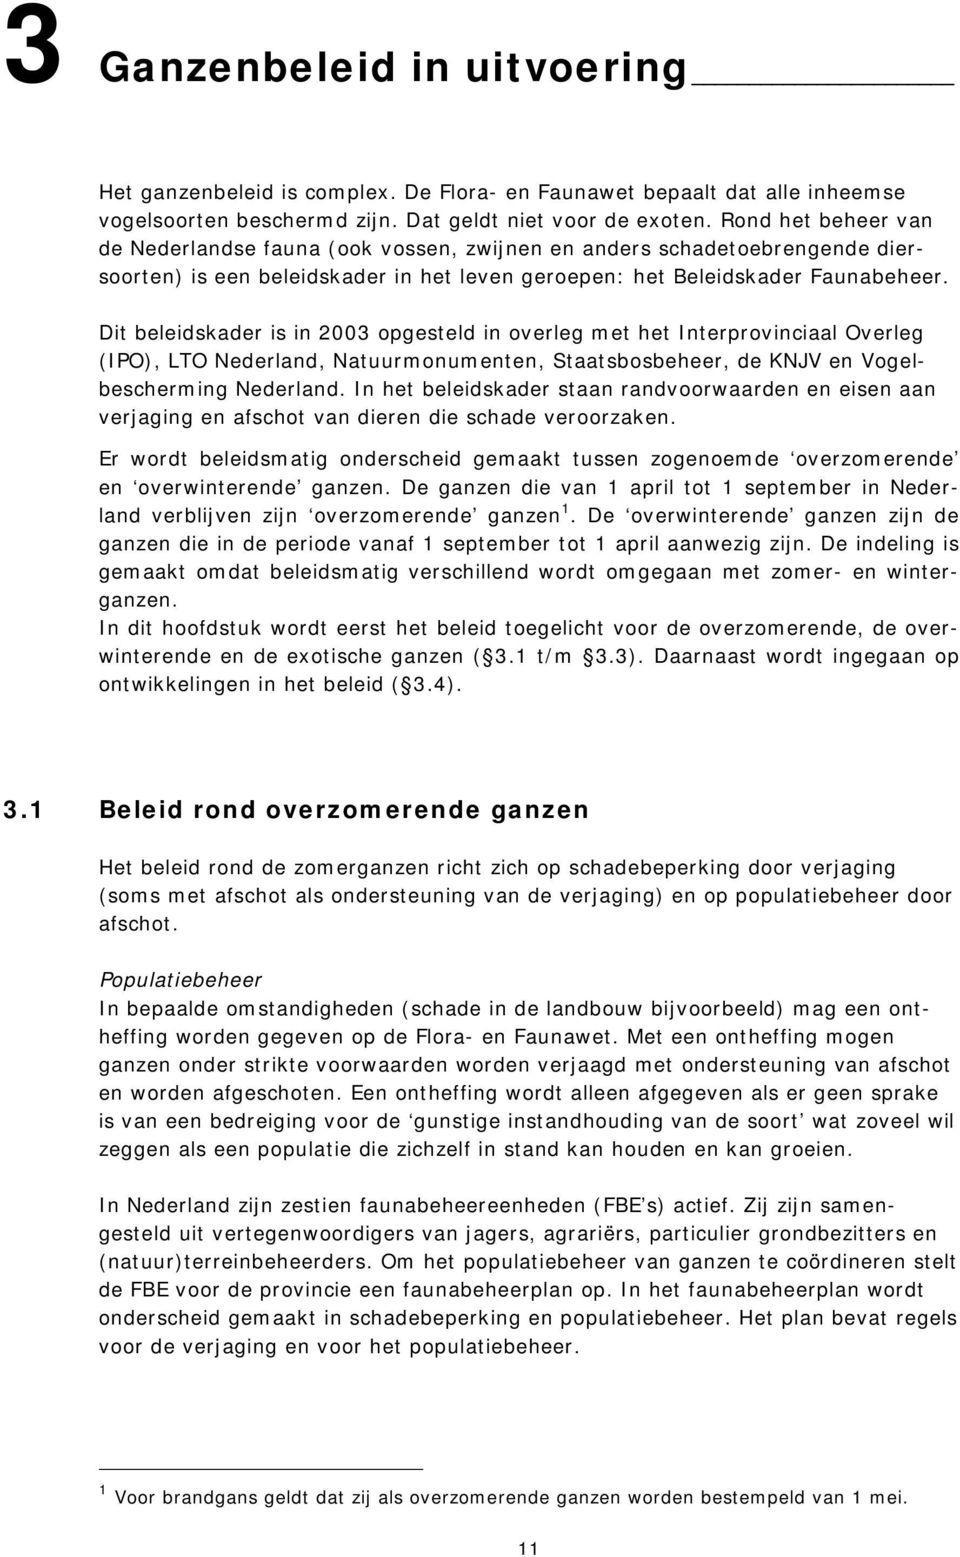 Dit beleidskader is in 2003 opgesteld in overleg met het Interprovinciaal Overleg (IPO), LTO Nederland, Natuurmonumenten, Staatsbosbeheer, de KNJV en Vogelbescherming Nederland.